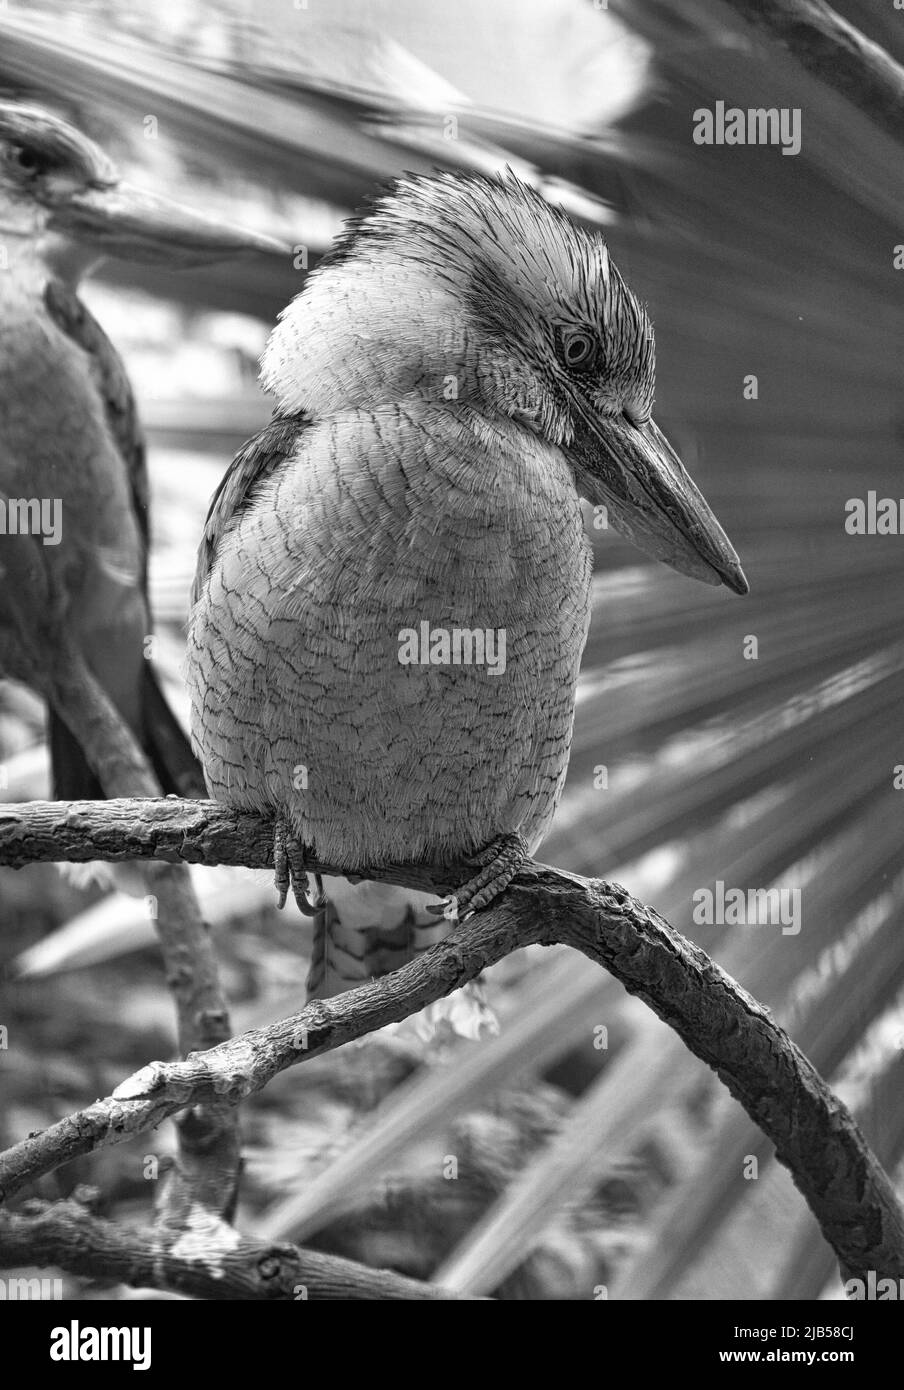 Lachender Hans in Schwarz und Weiß. Auf einem Ast. Schönes buntes Gefieder des australischen Vogels. Interessante Beobachtung des Tieres. Tierfotos Stockfoto